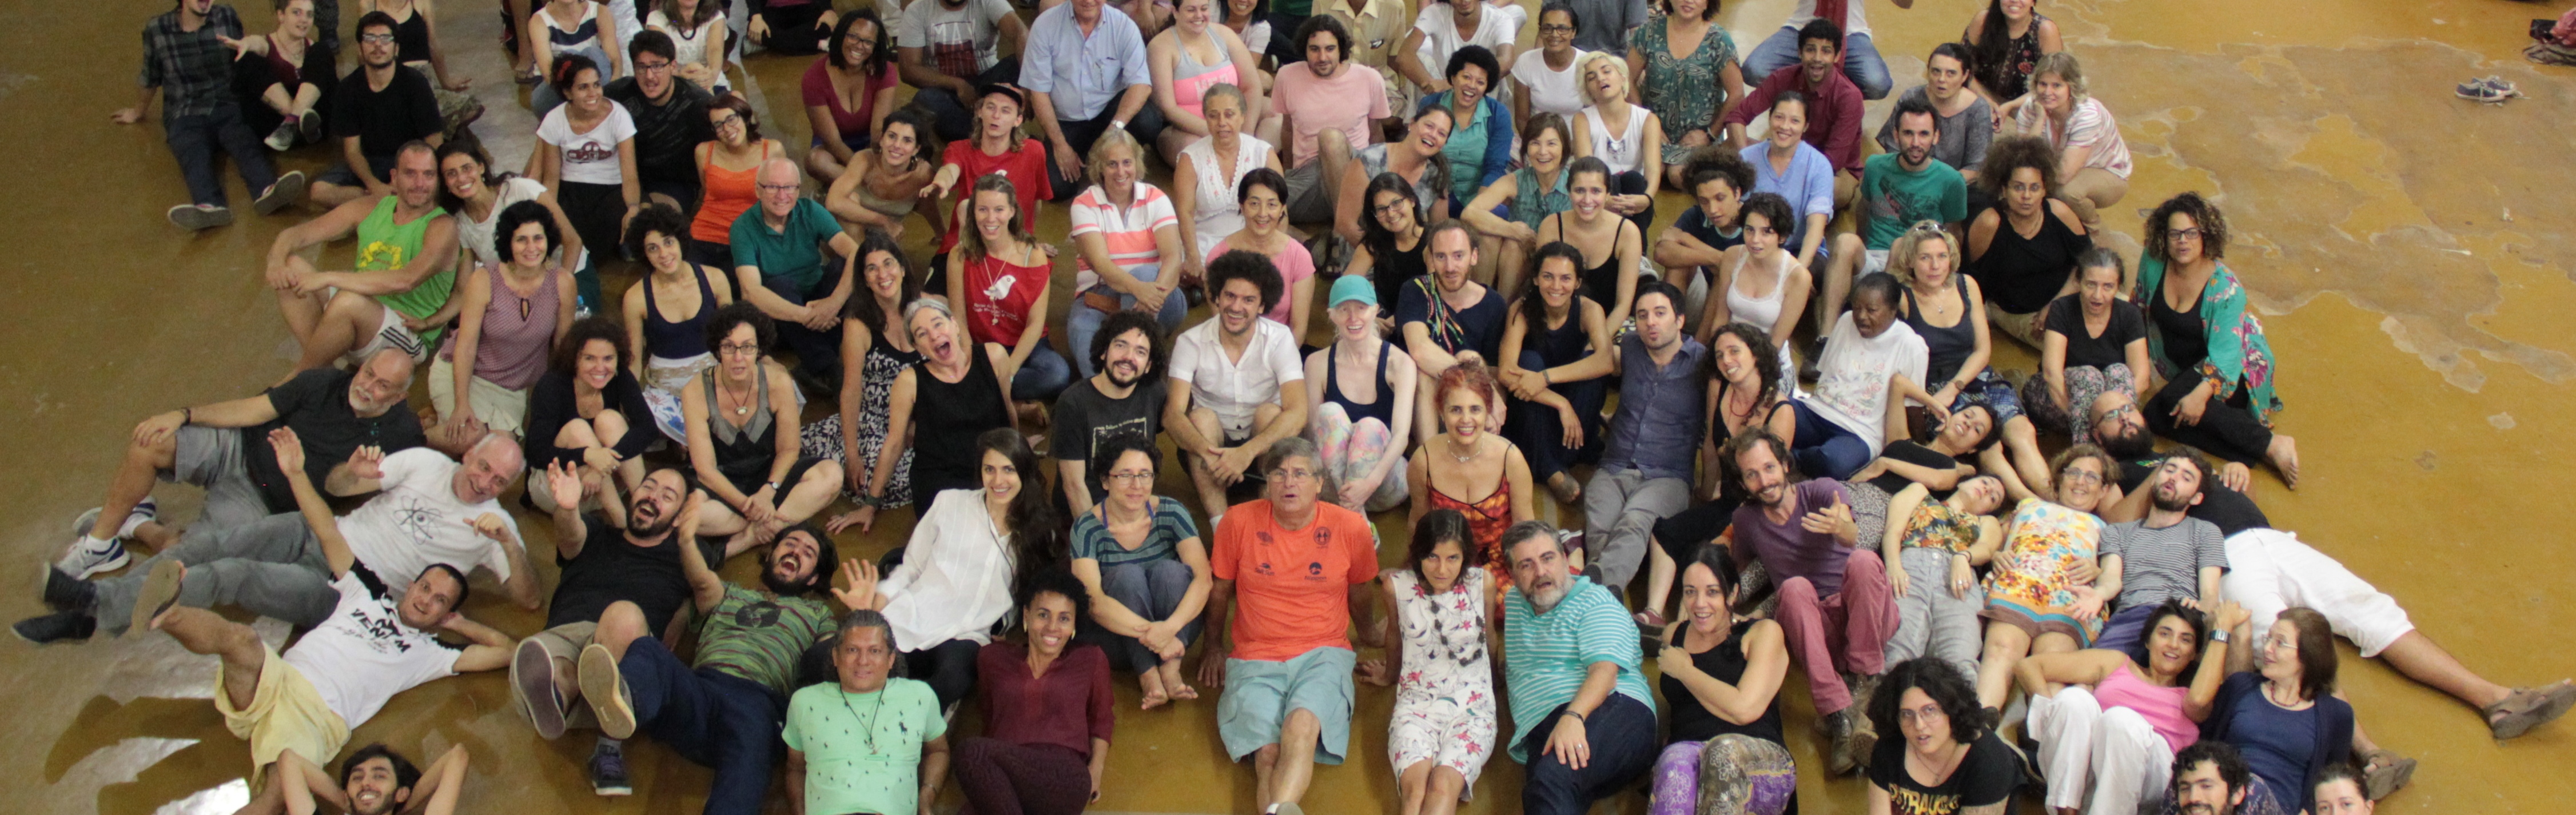 (Português) Workshop musical internacional gratuito abre as atividades do Coral da USP em 2019